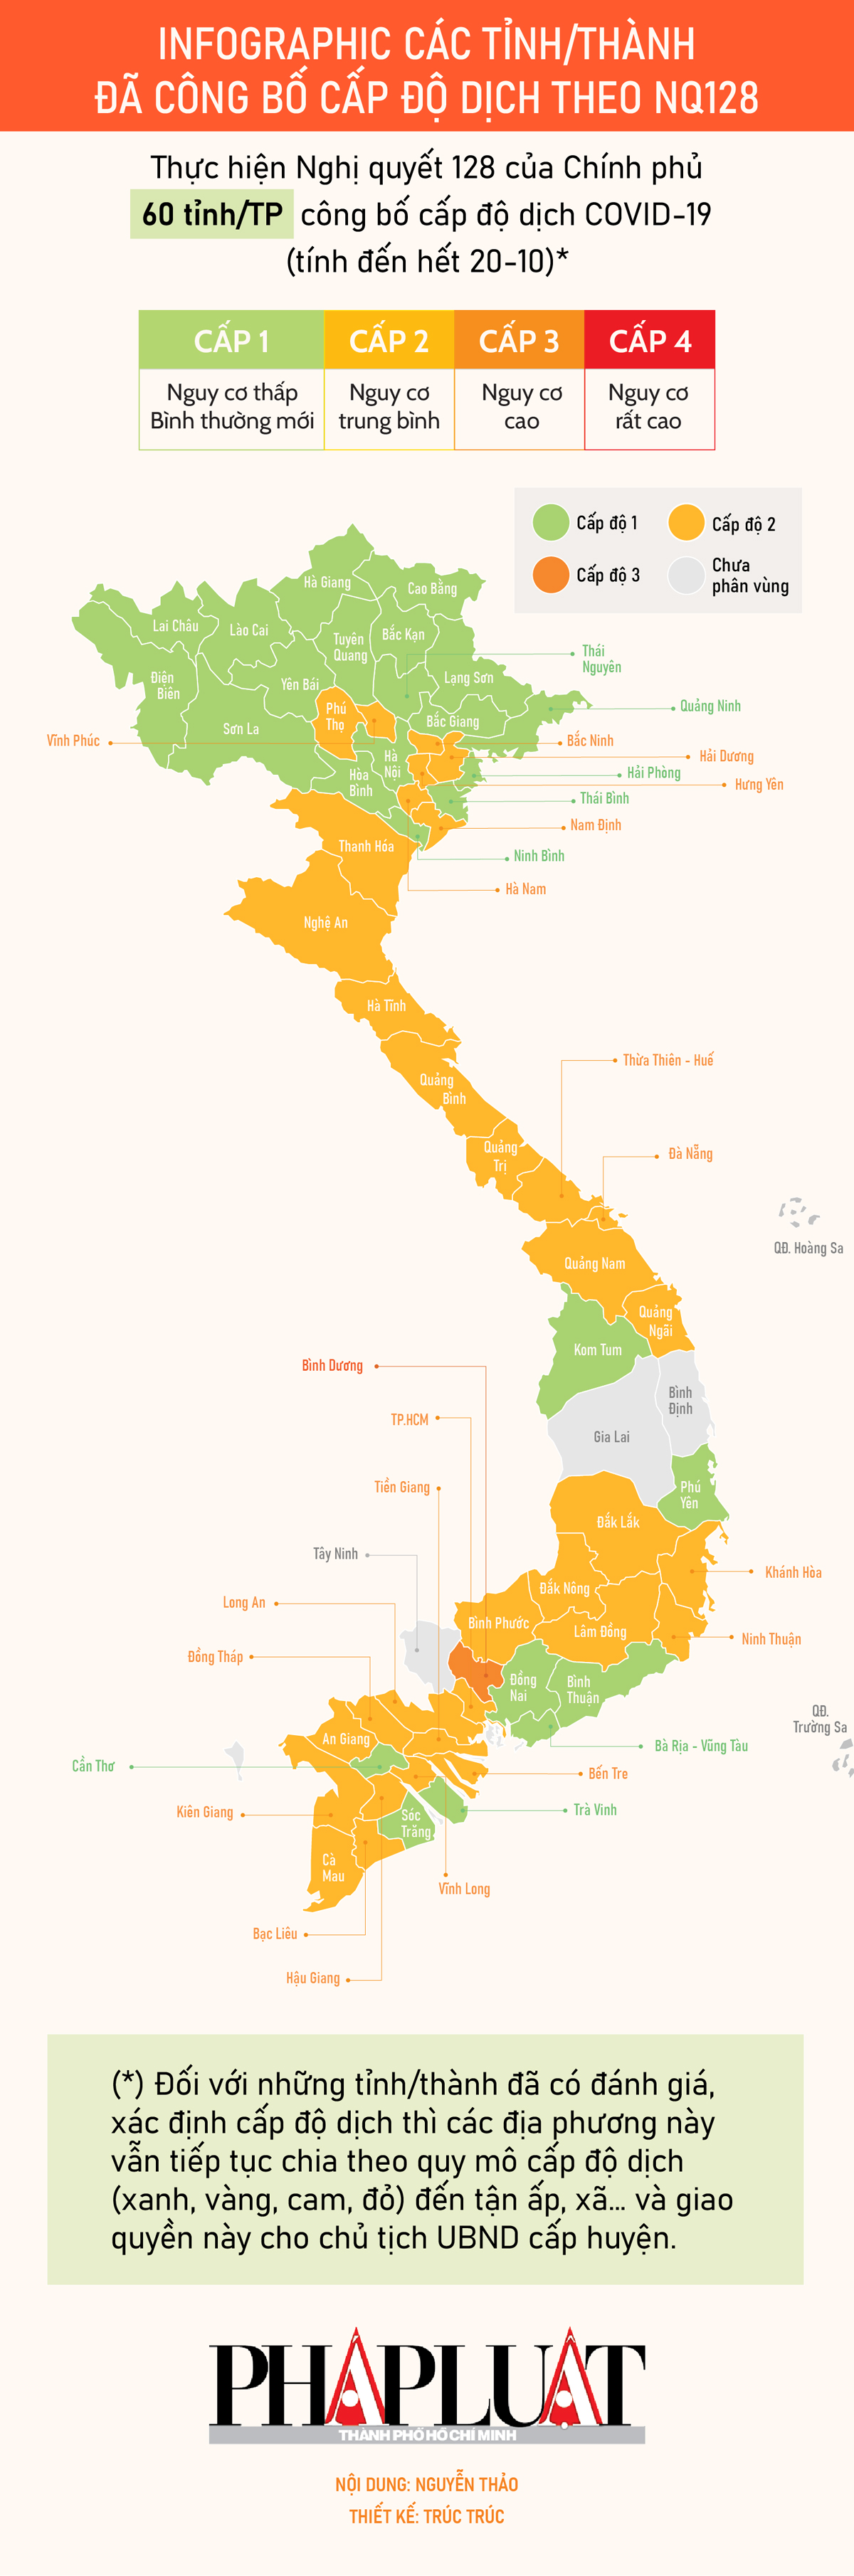 Infographic: Cấp độ dịch tại 60 tỉnh, thành theo Nghị quyết 128 - 1